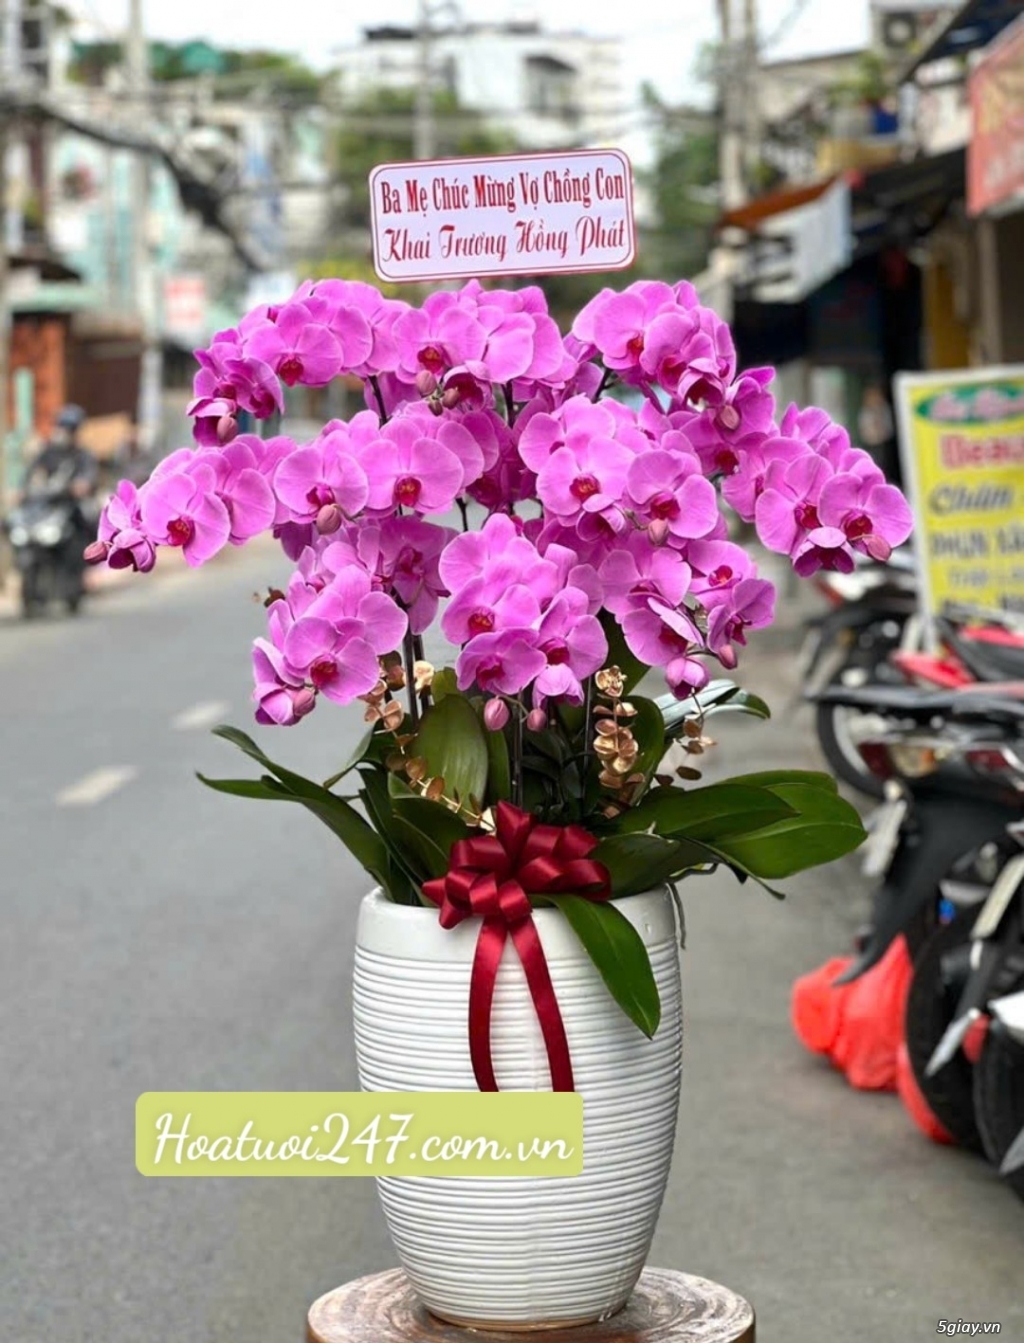 Tìm hiểu về Hoa Lan Hồ Điệp - Ý nghĩa của các màu hoa tại Hoa Lan 247 - 14